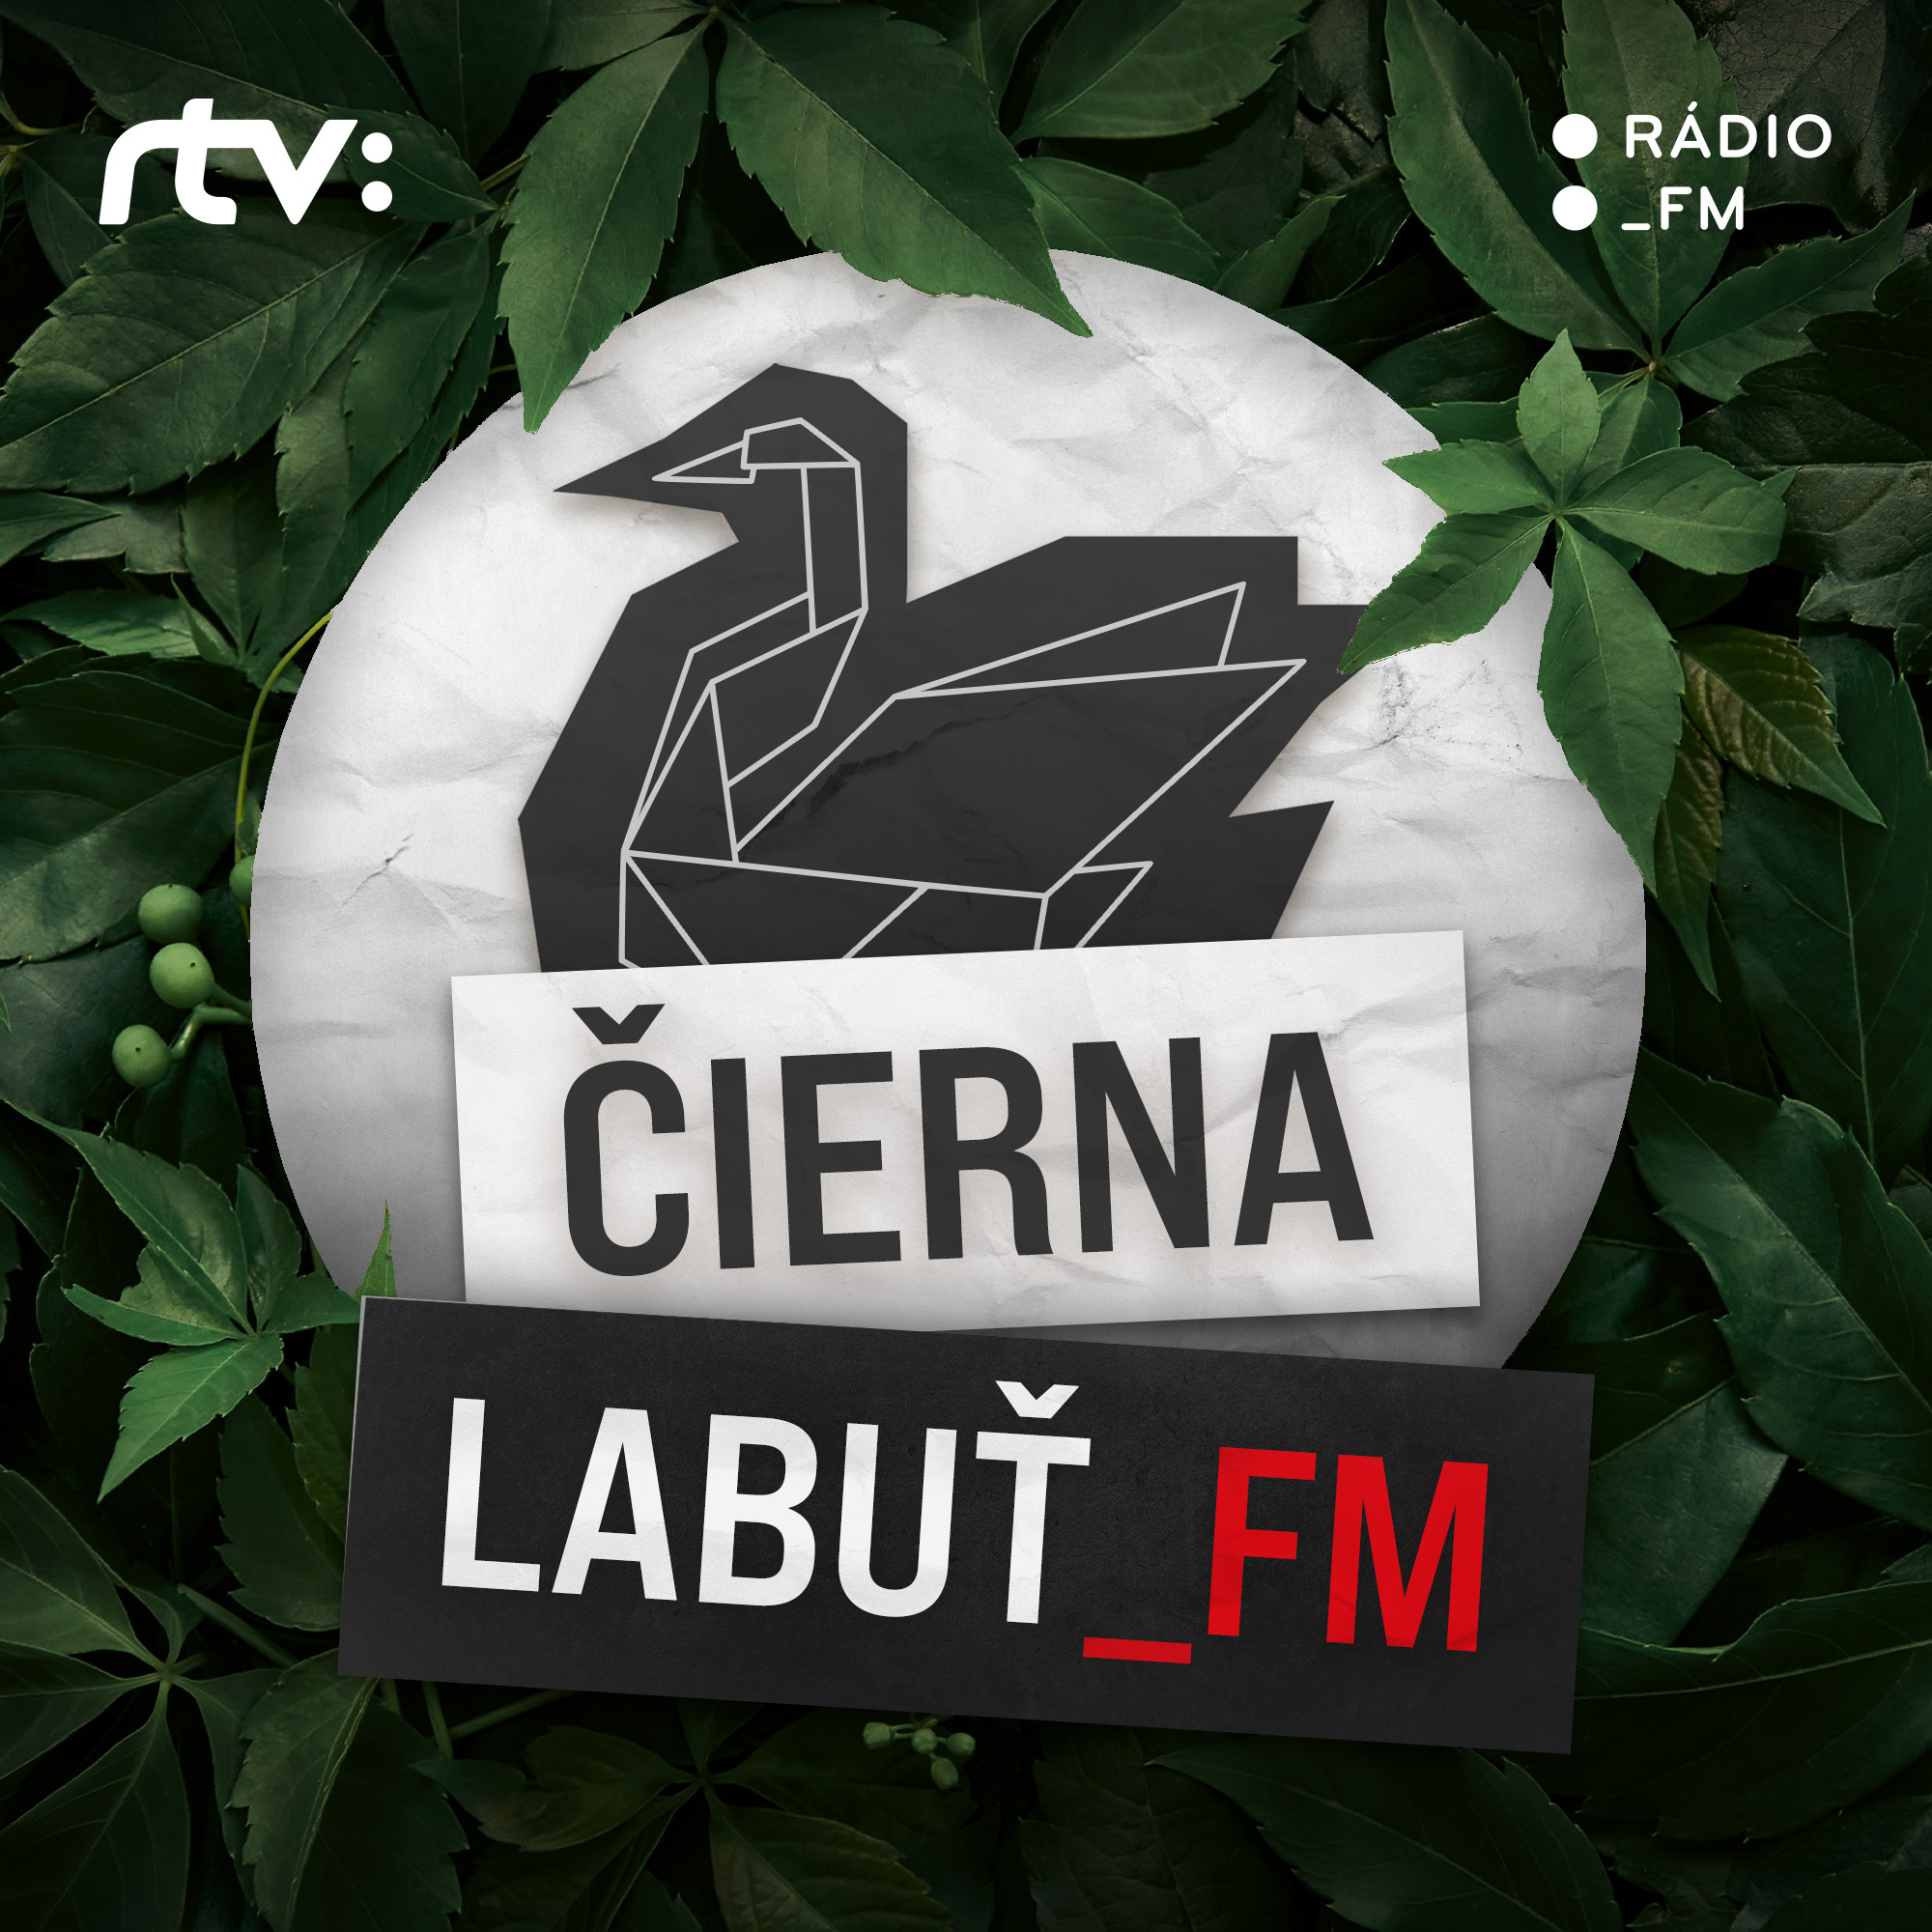 Čierna labuť_FM